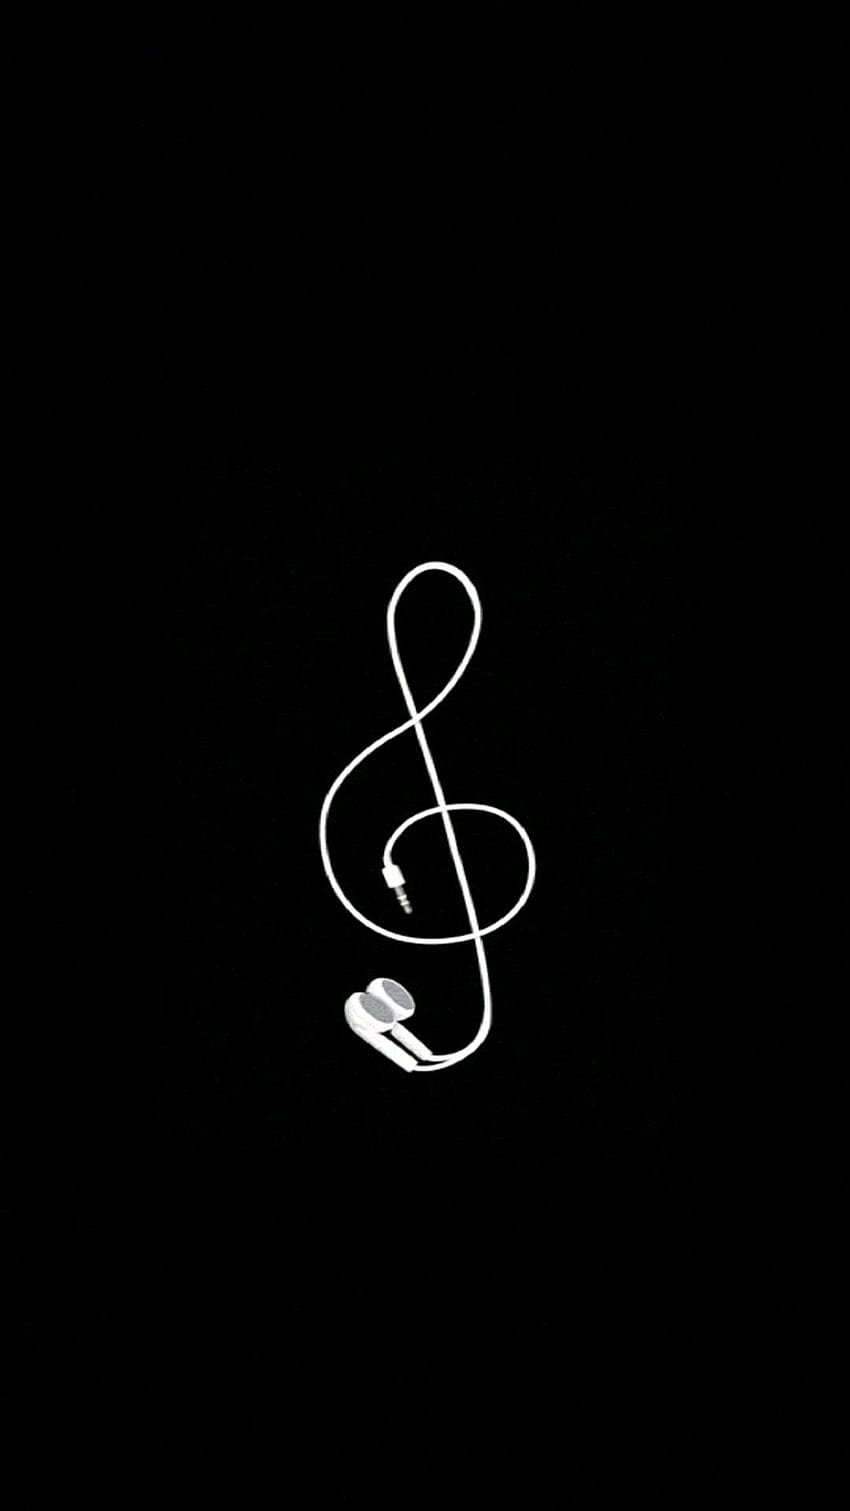 Notas musicales negras, icono de la música fondo de pantalla del teléfono